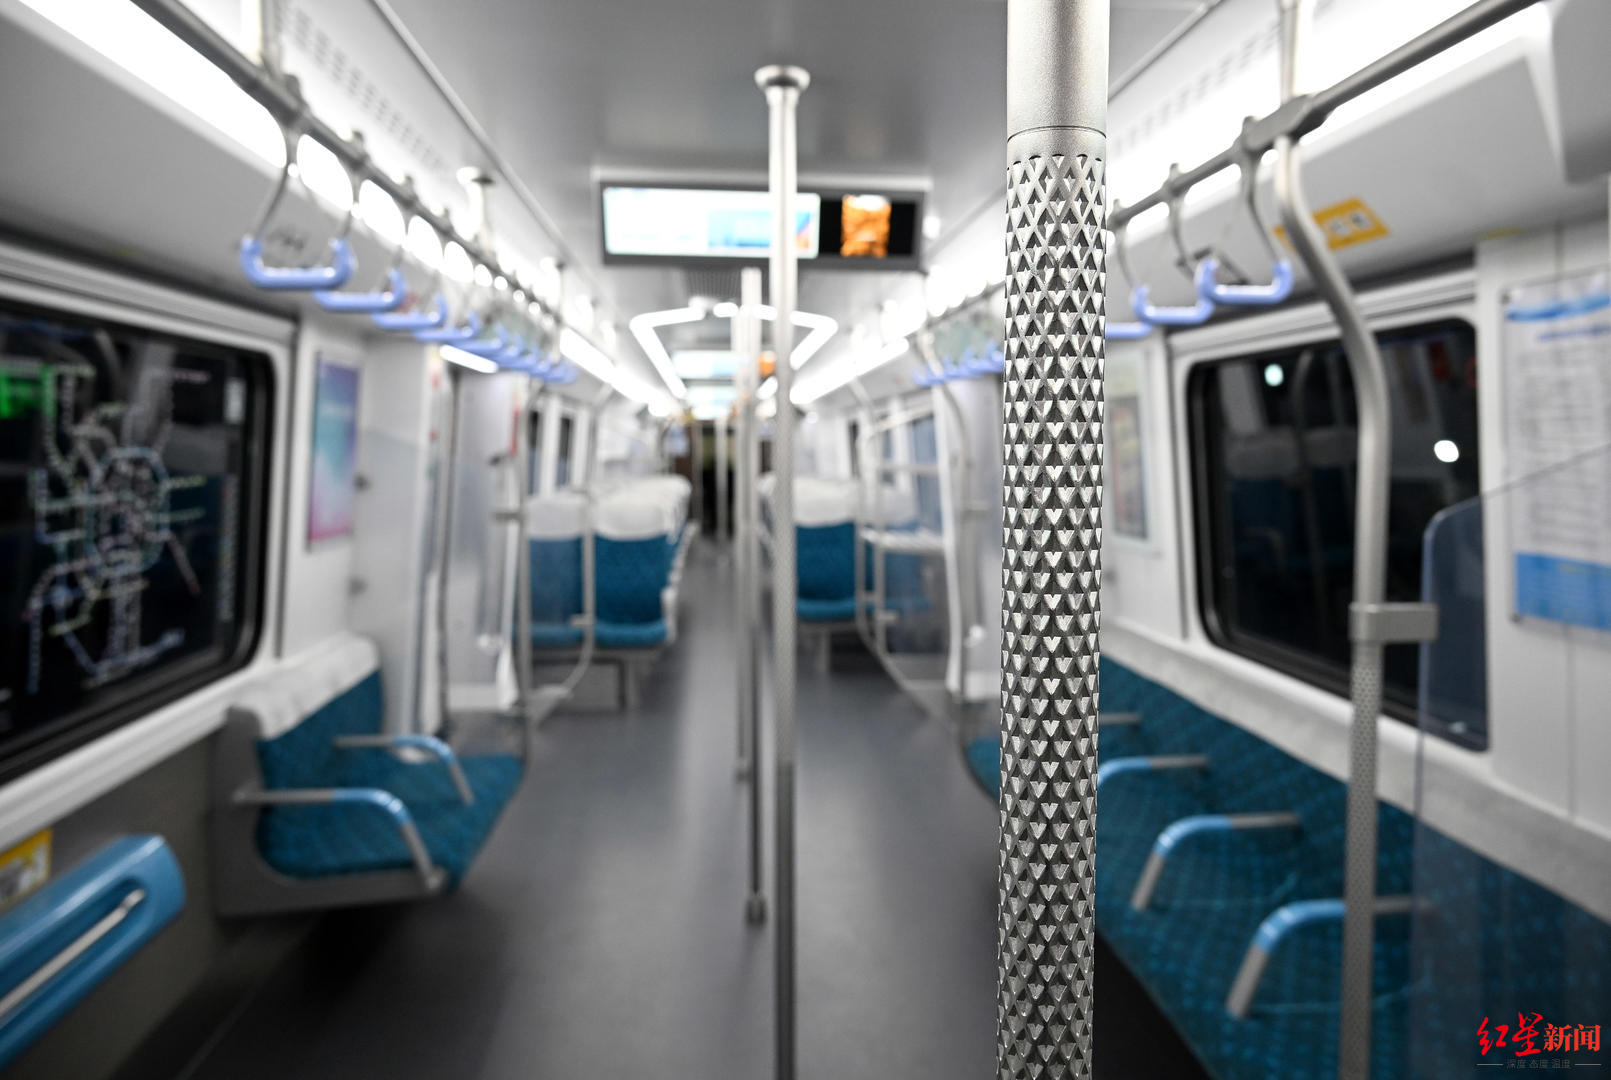 ▲19号线二期的城市轨道交通车厢内部，扶手防滑设计